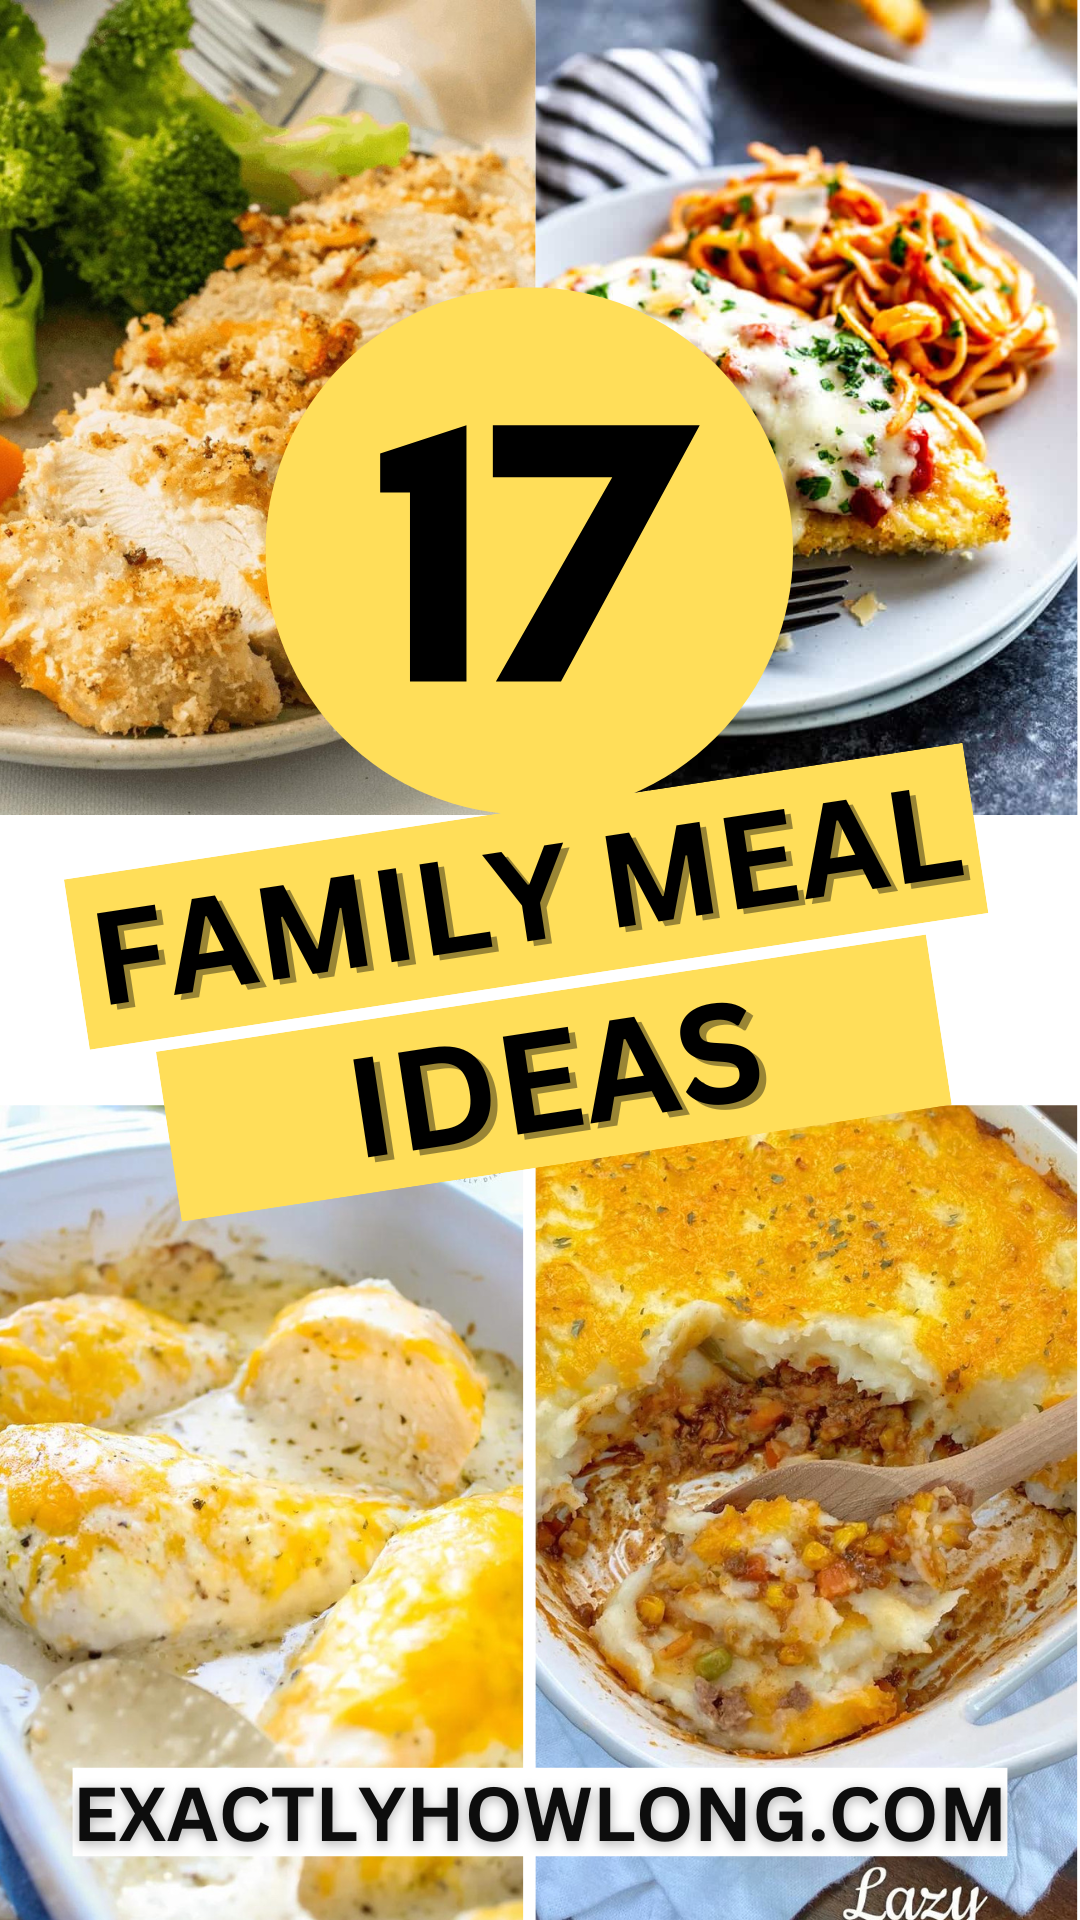 17 tanich, łatwych pomysłów na rodzinne posiłki na niedrogie kolacje